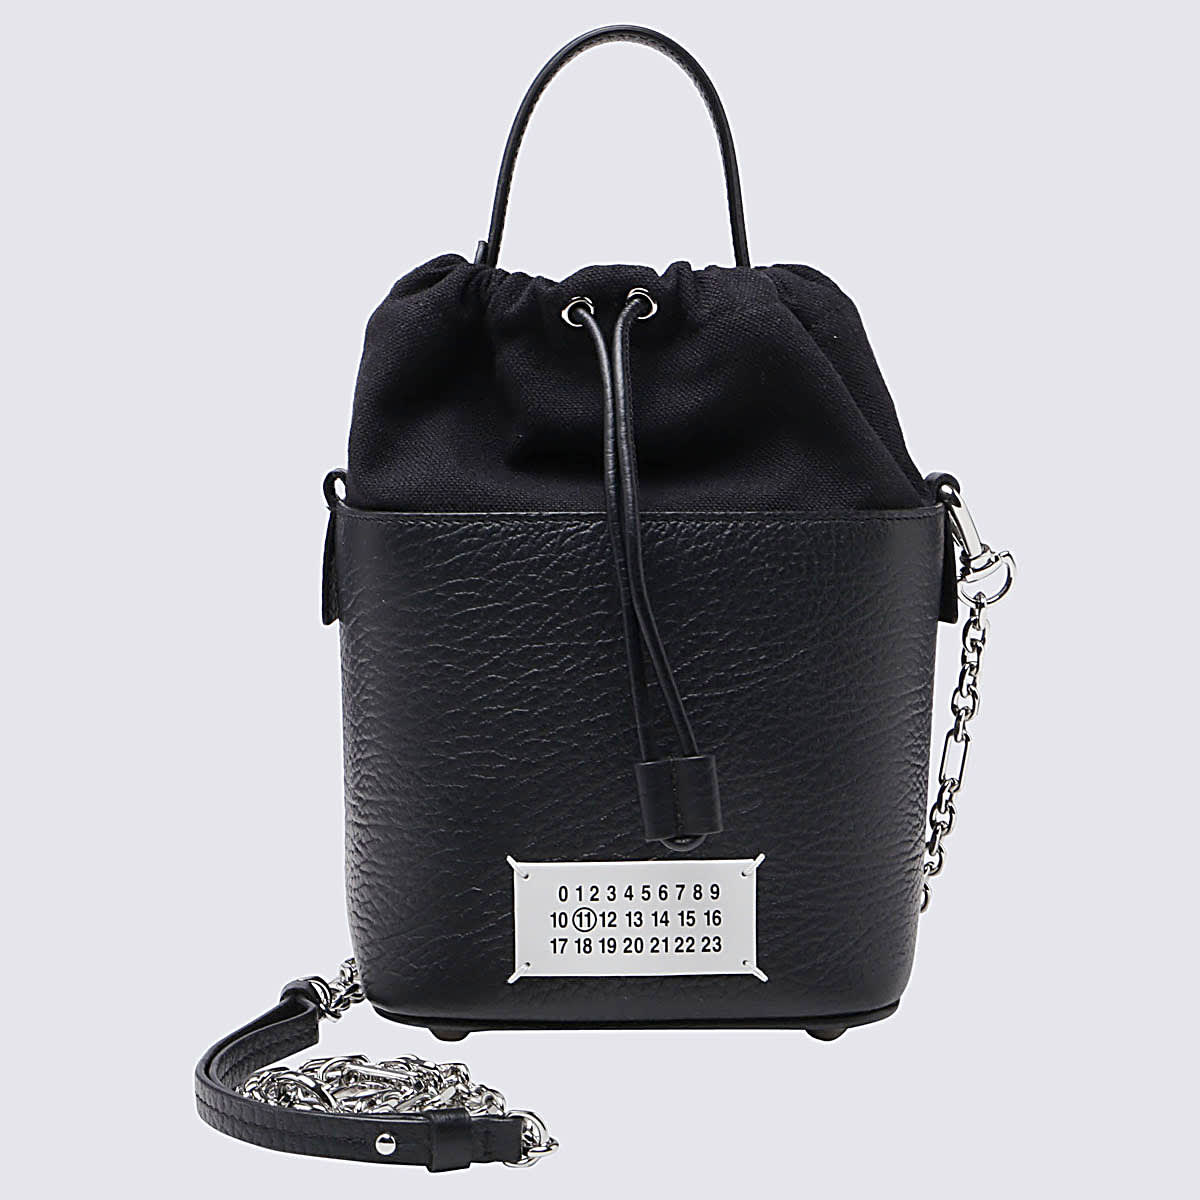 Maison Margiela Black Leather 5ac Bucket Bag